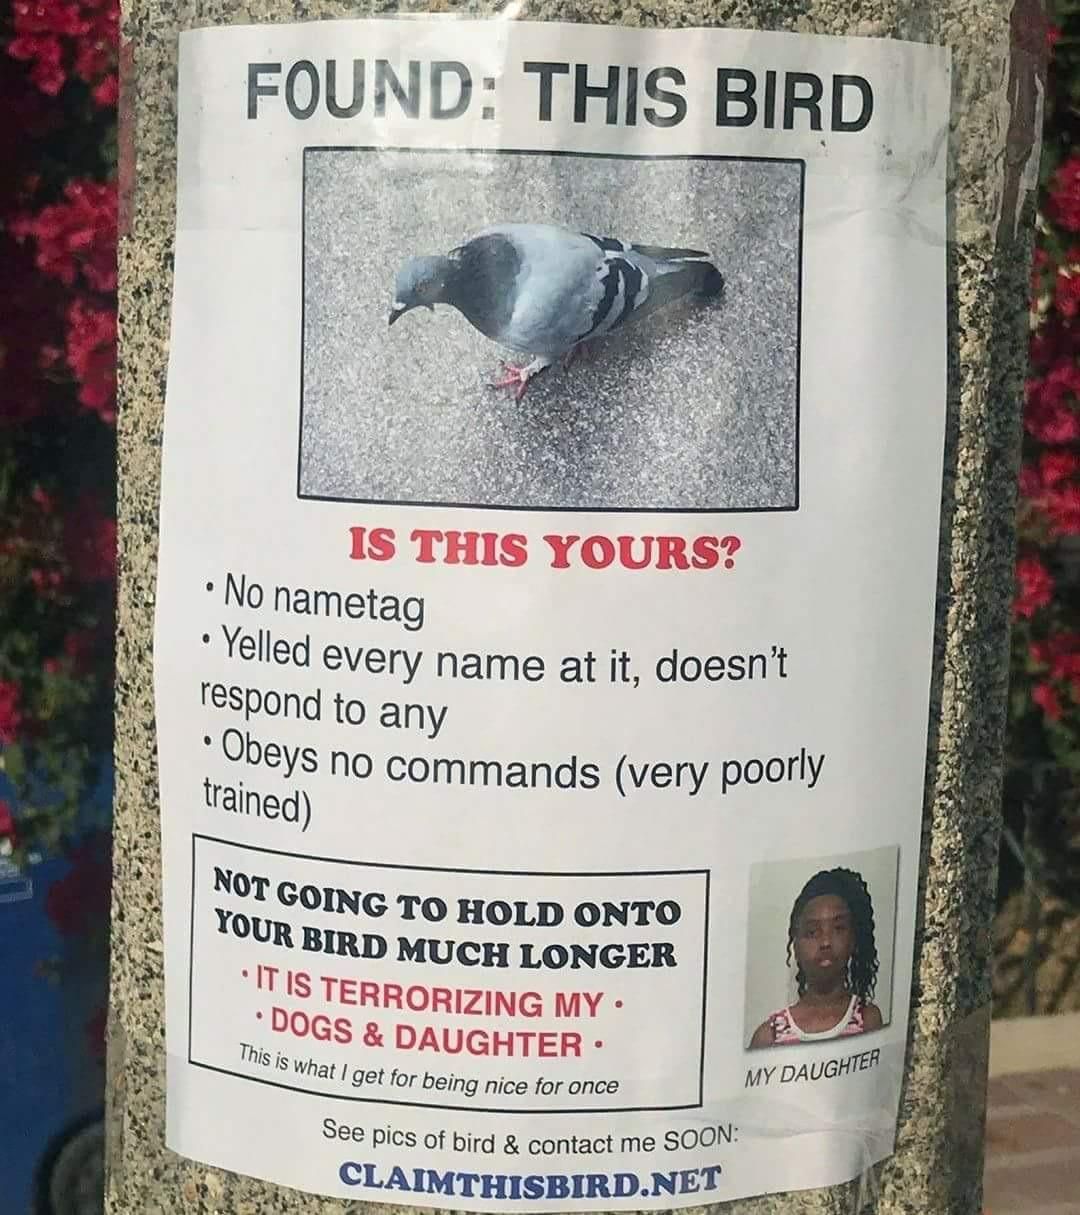 FOUND: THIS BIRD